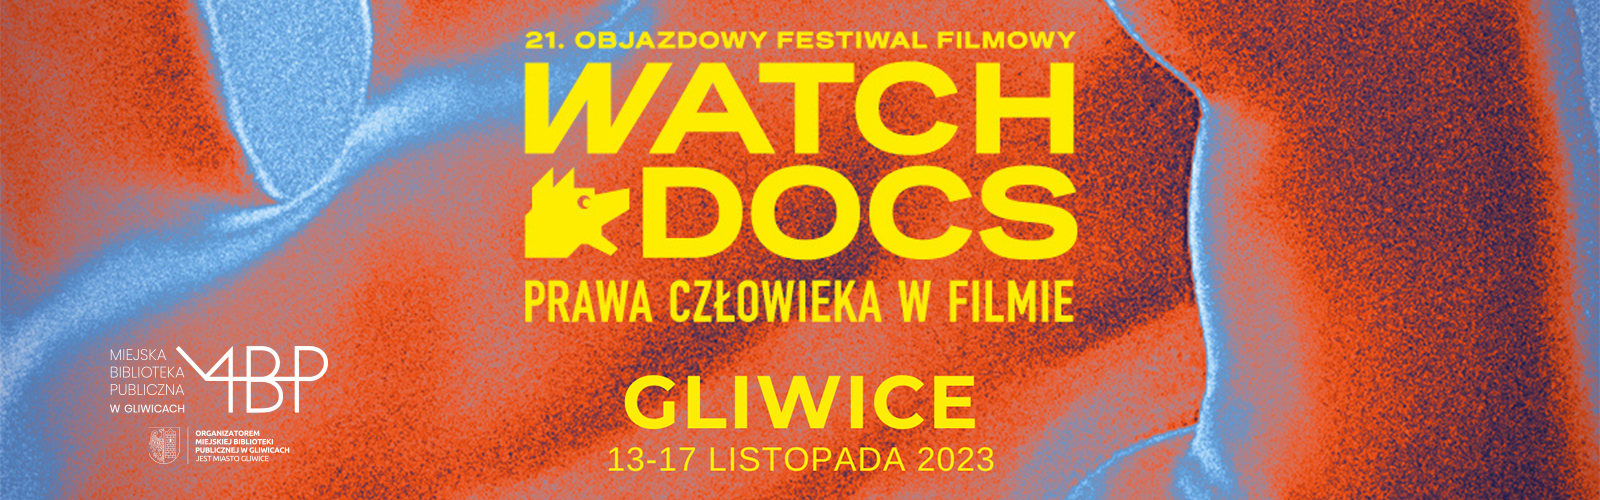 Baner z informacją o festiwalu Watch Docs